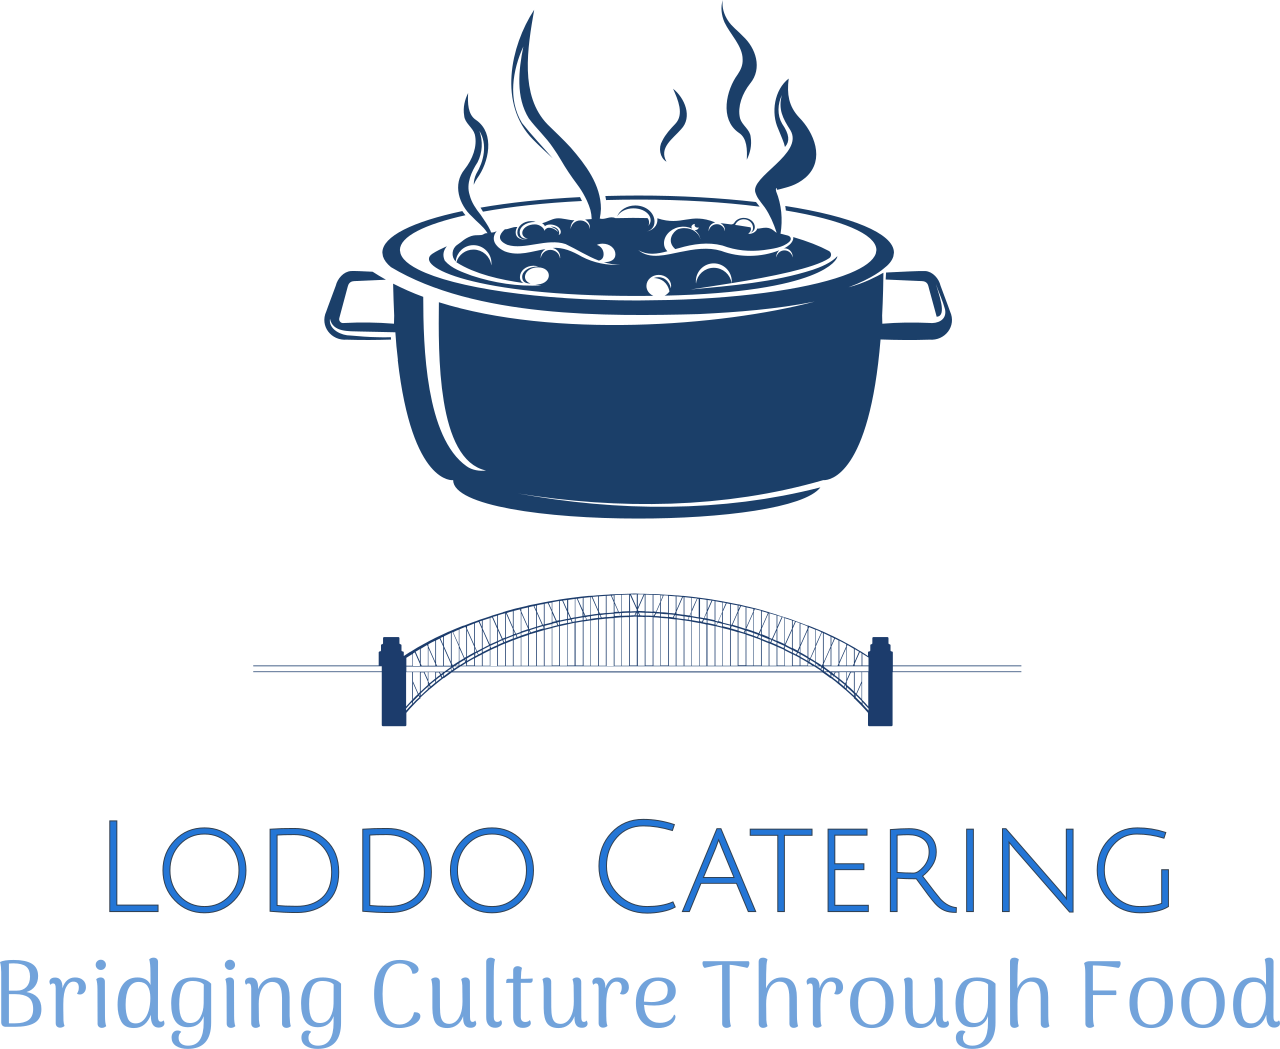 Loddo Catering's logo